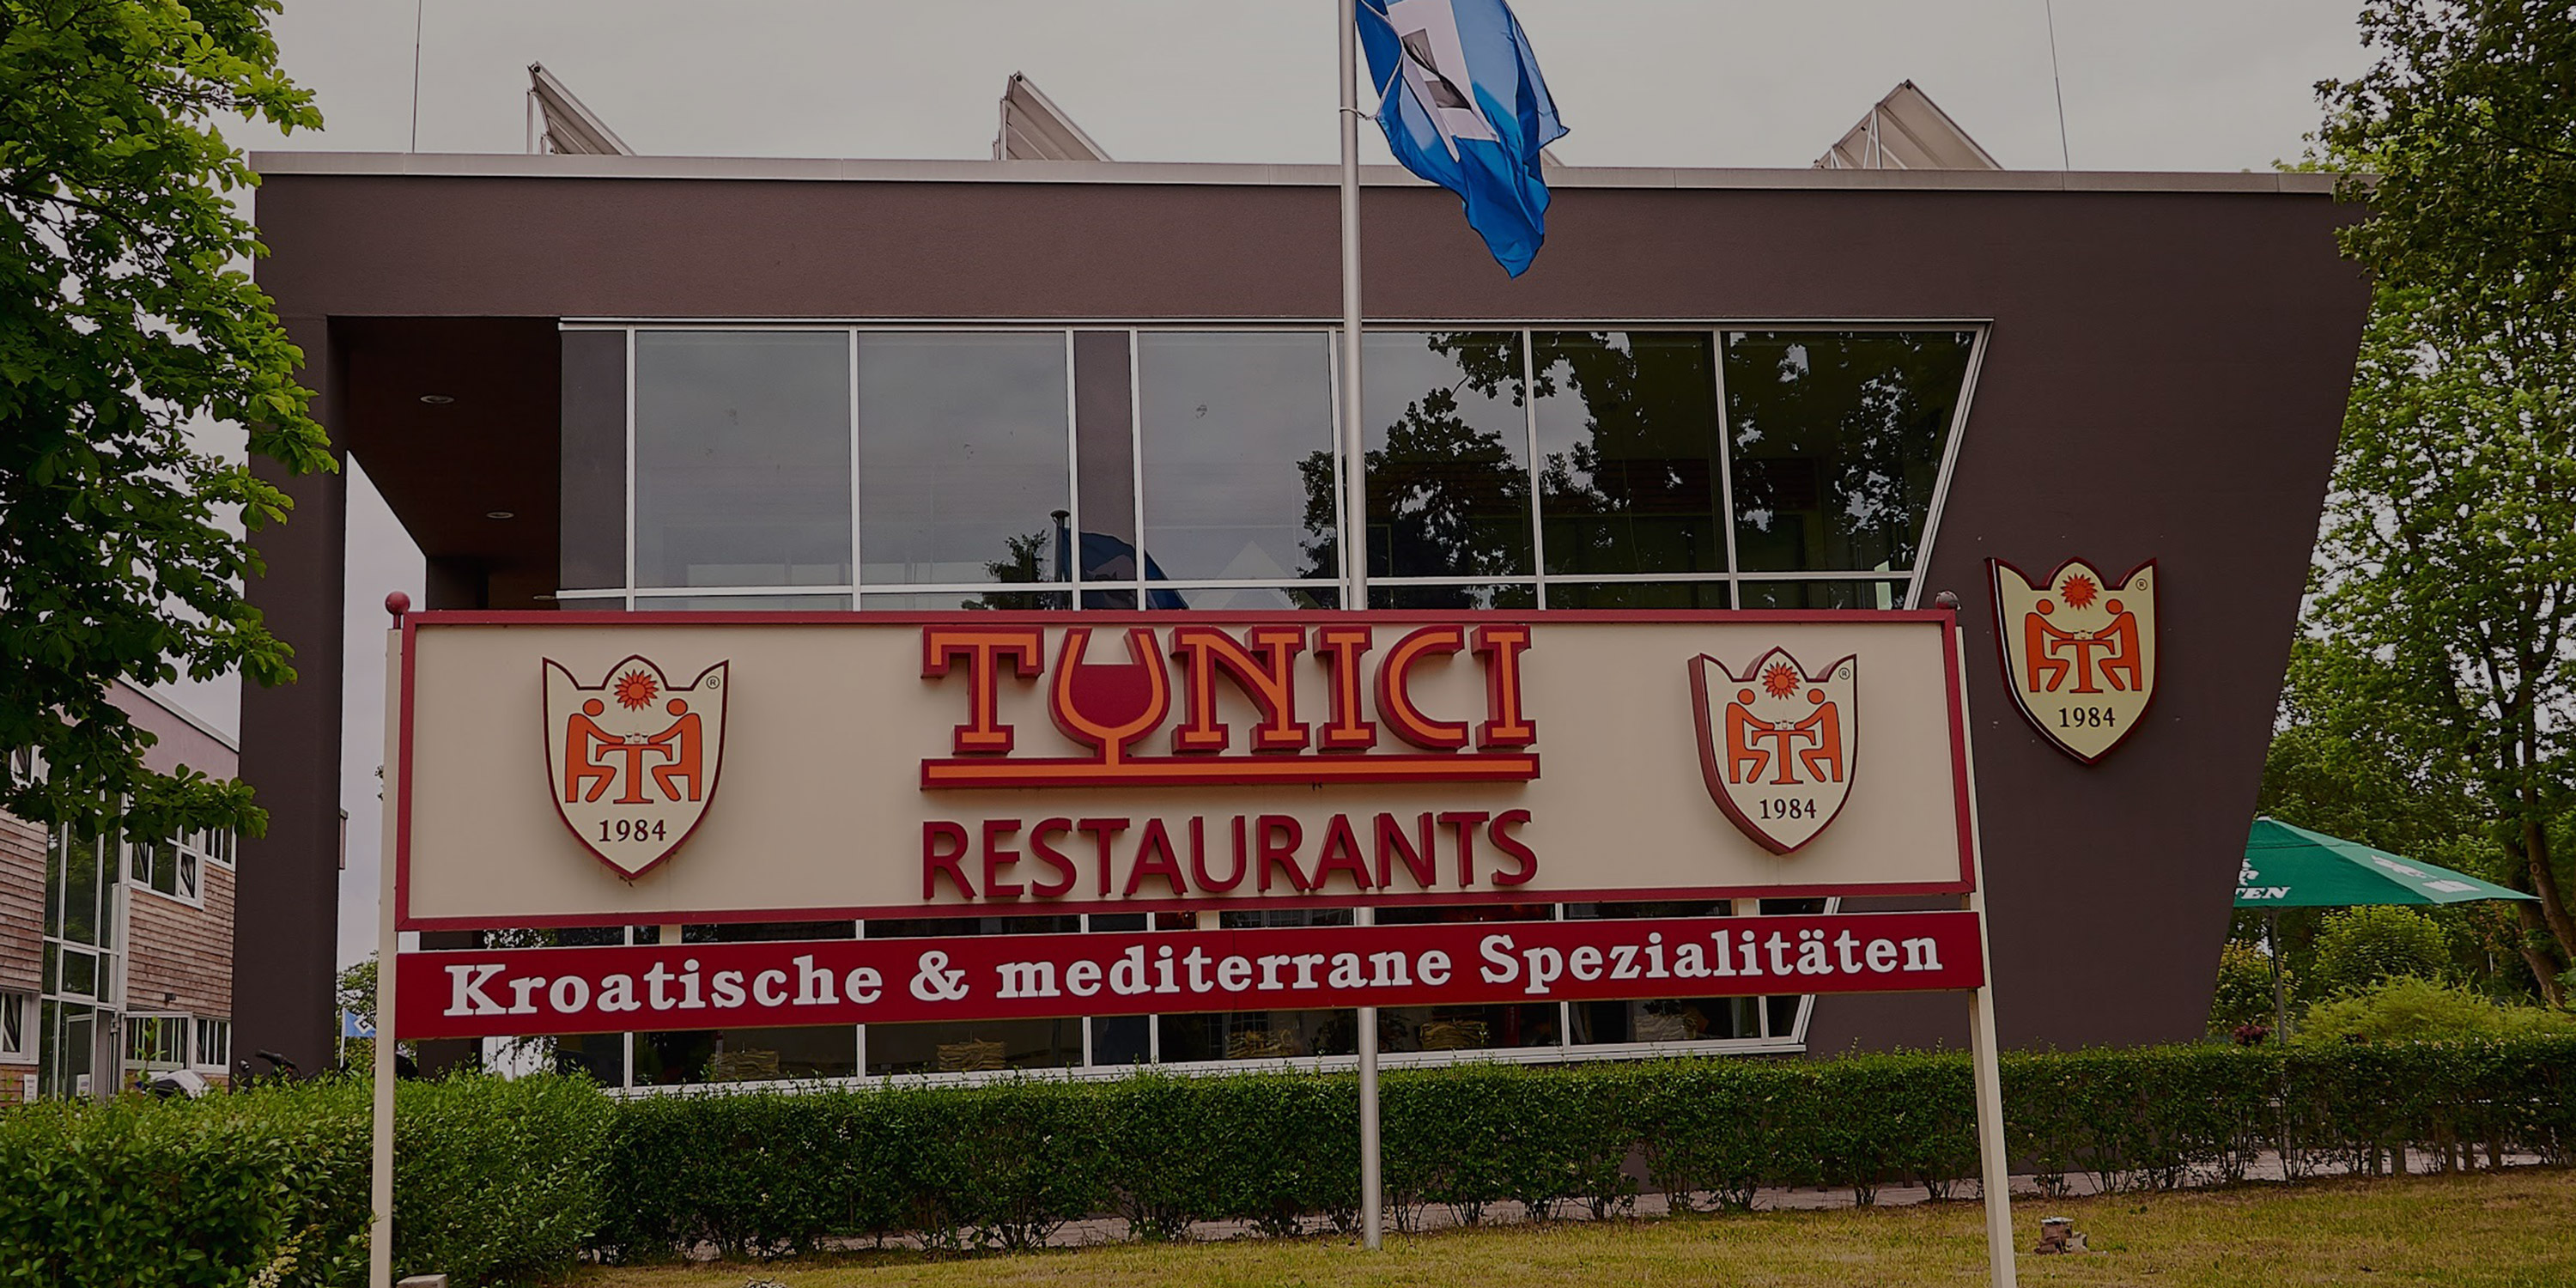 Tunici Restaurants - Norderstedt